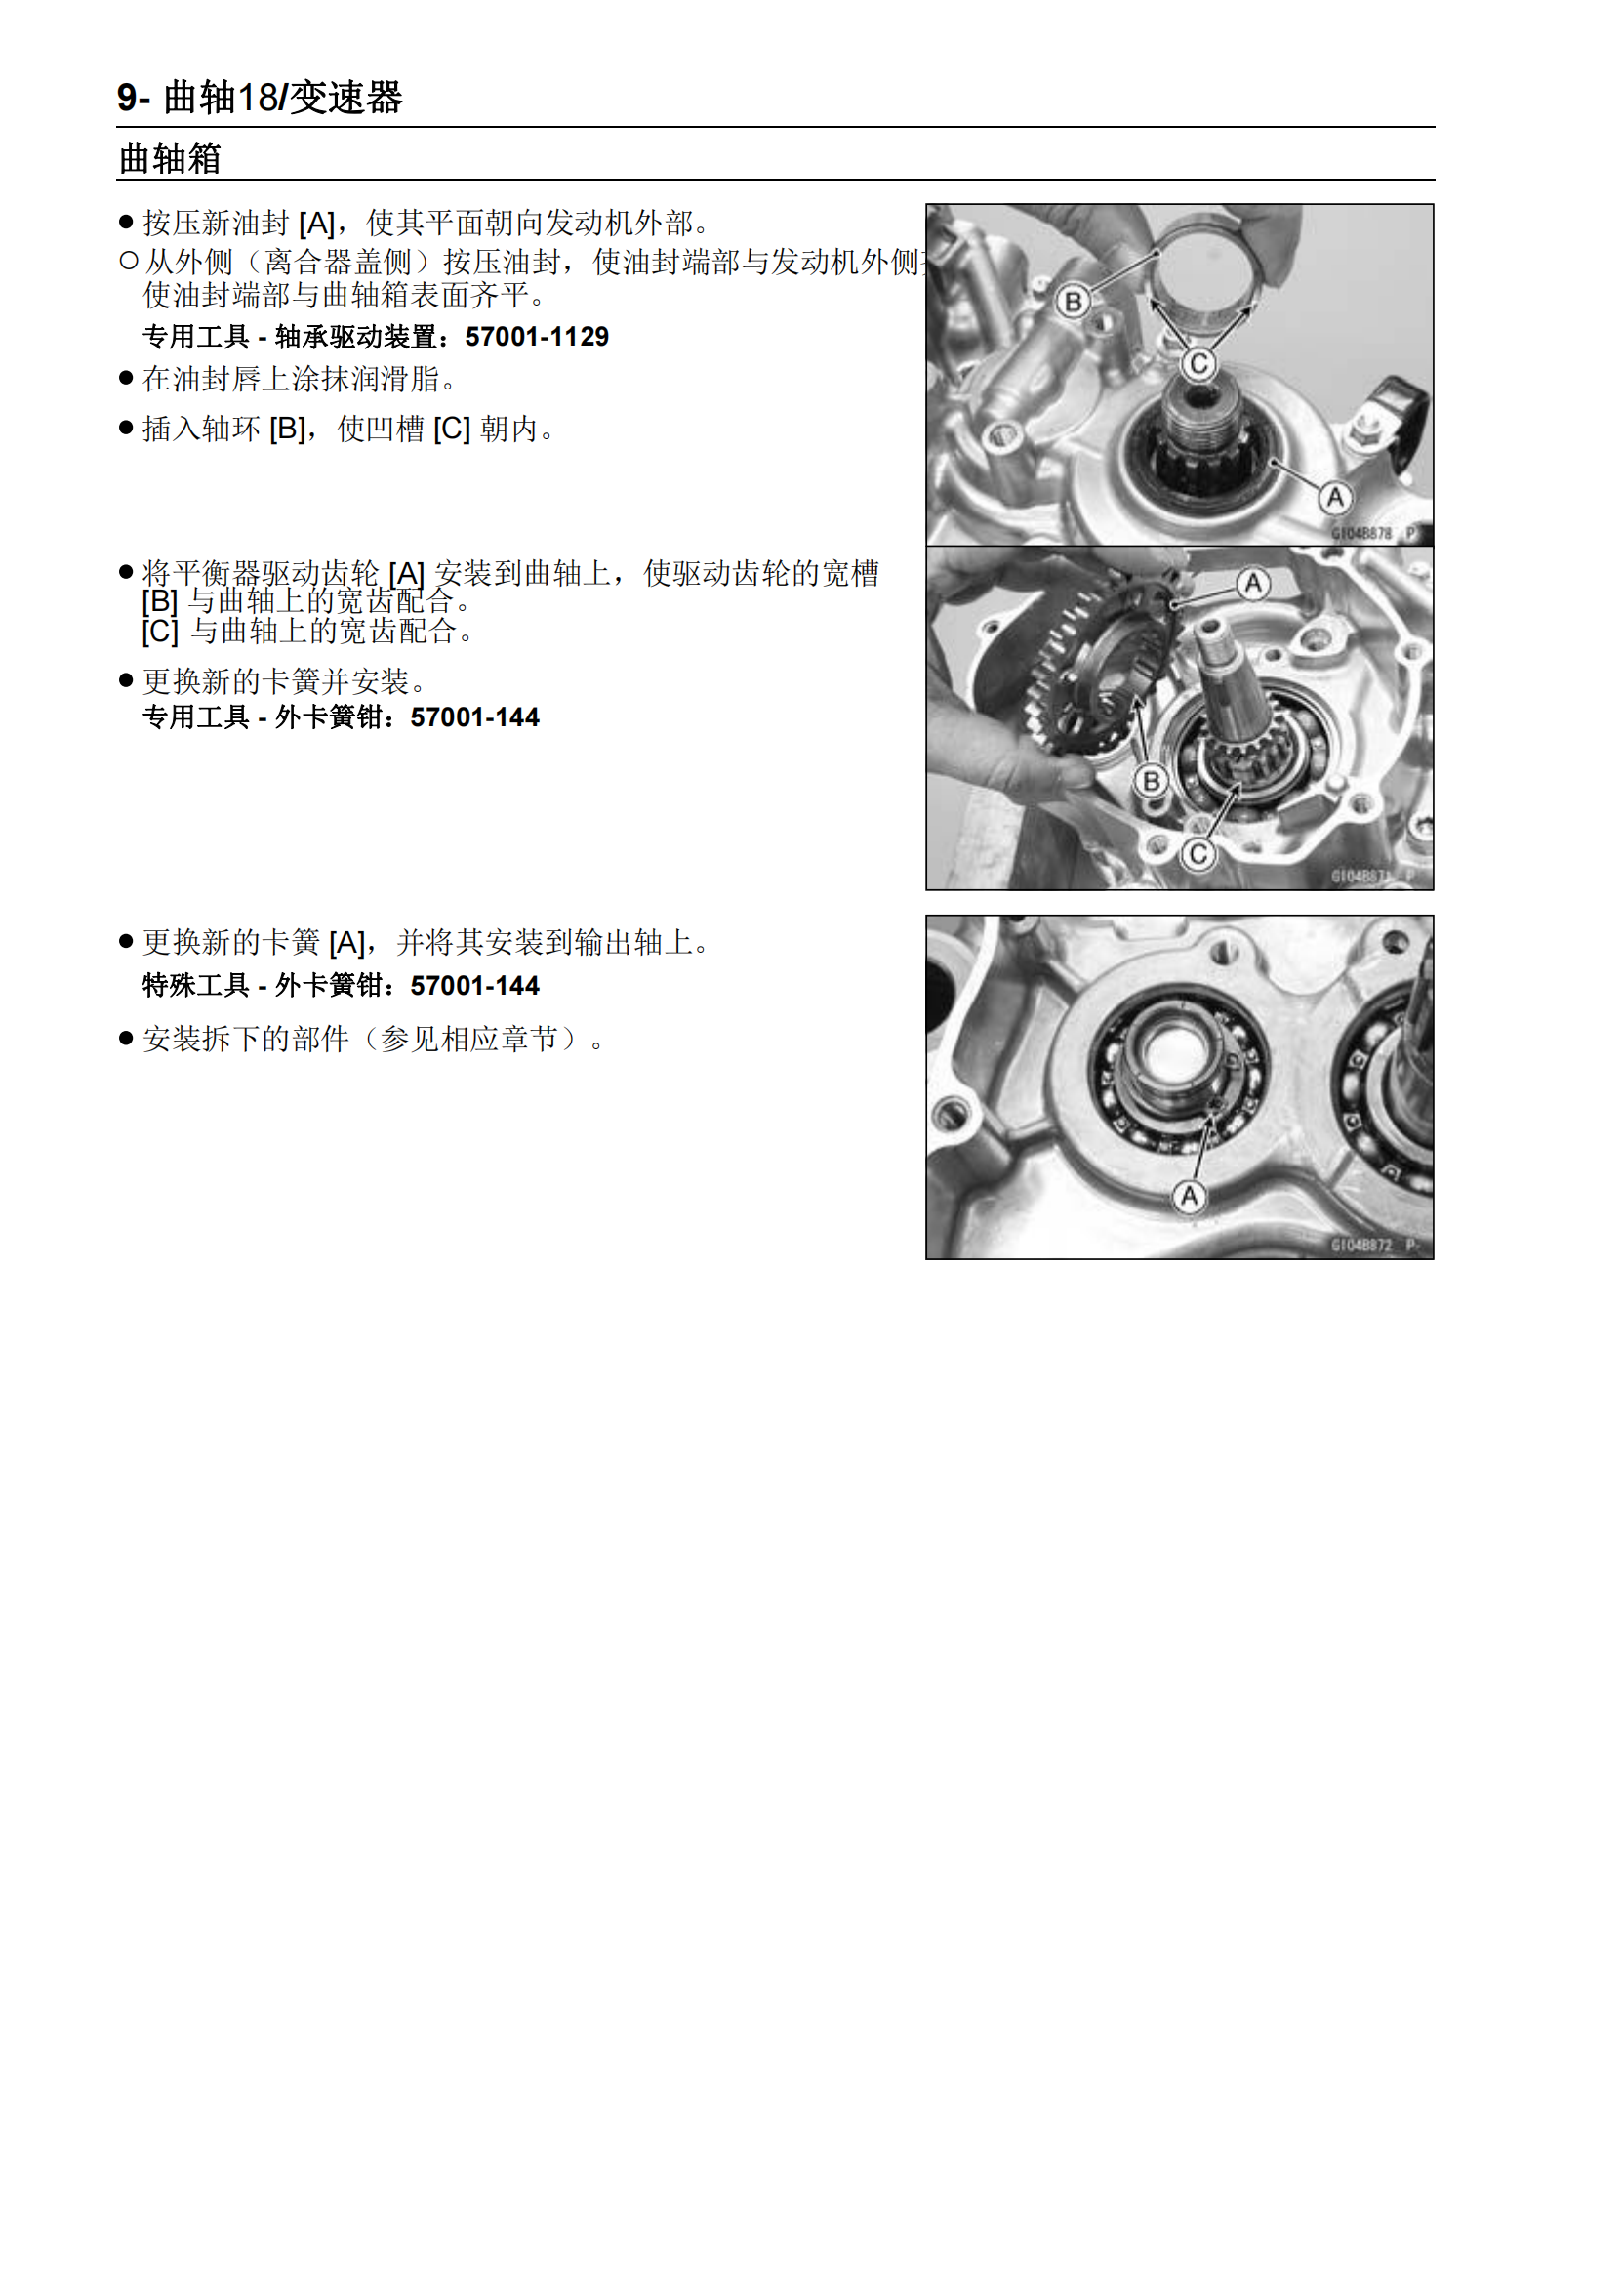 简体中文2016-2018年川崎kx450f维修手册kawasaki kx450f维修手册插图4